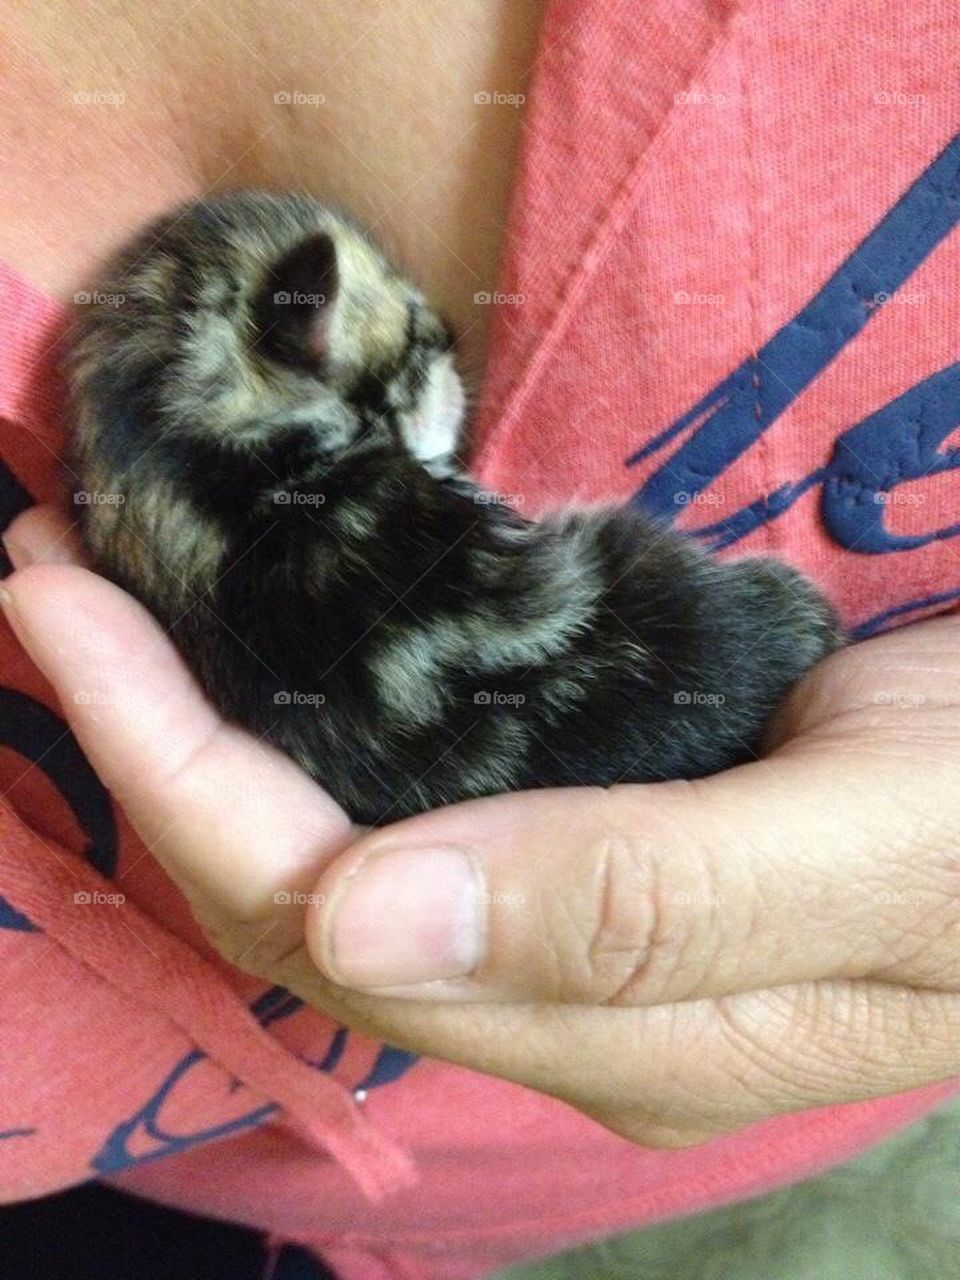 Rescued kitten 